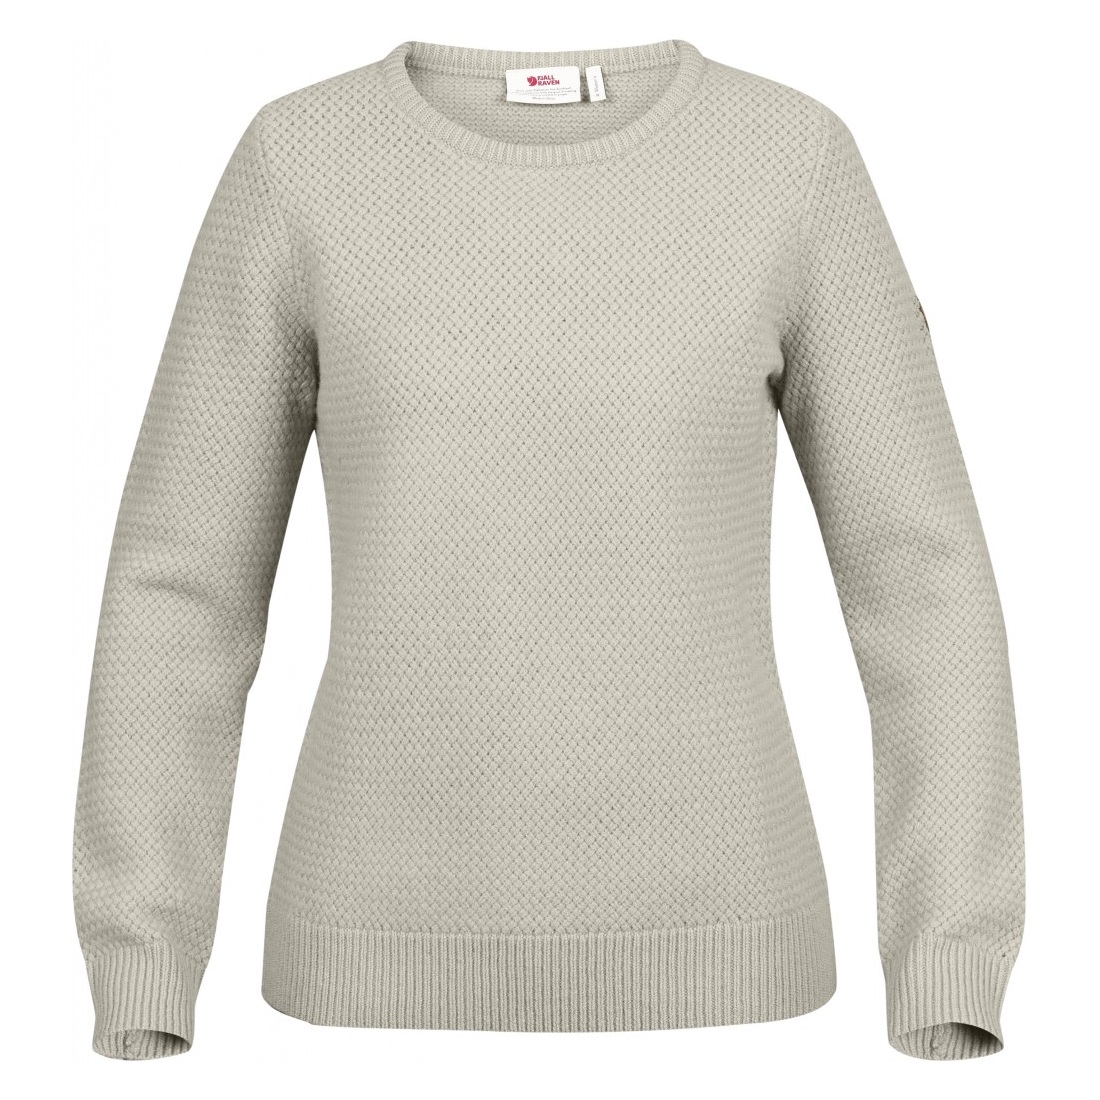 Women's Övik Structure Sweater Egg Shell-Grey